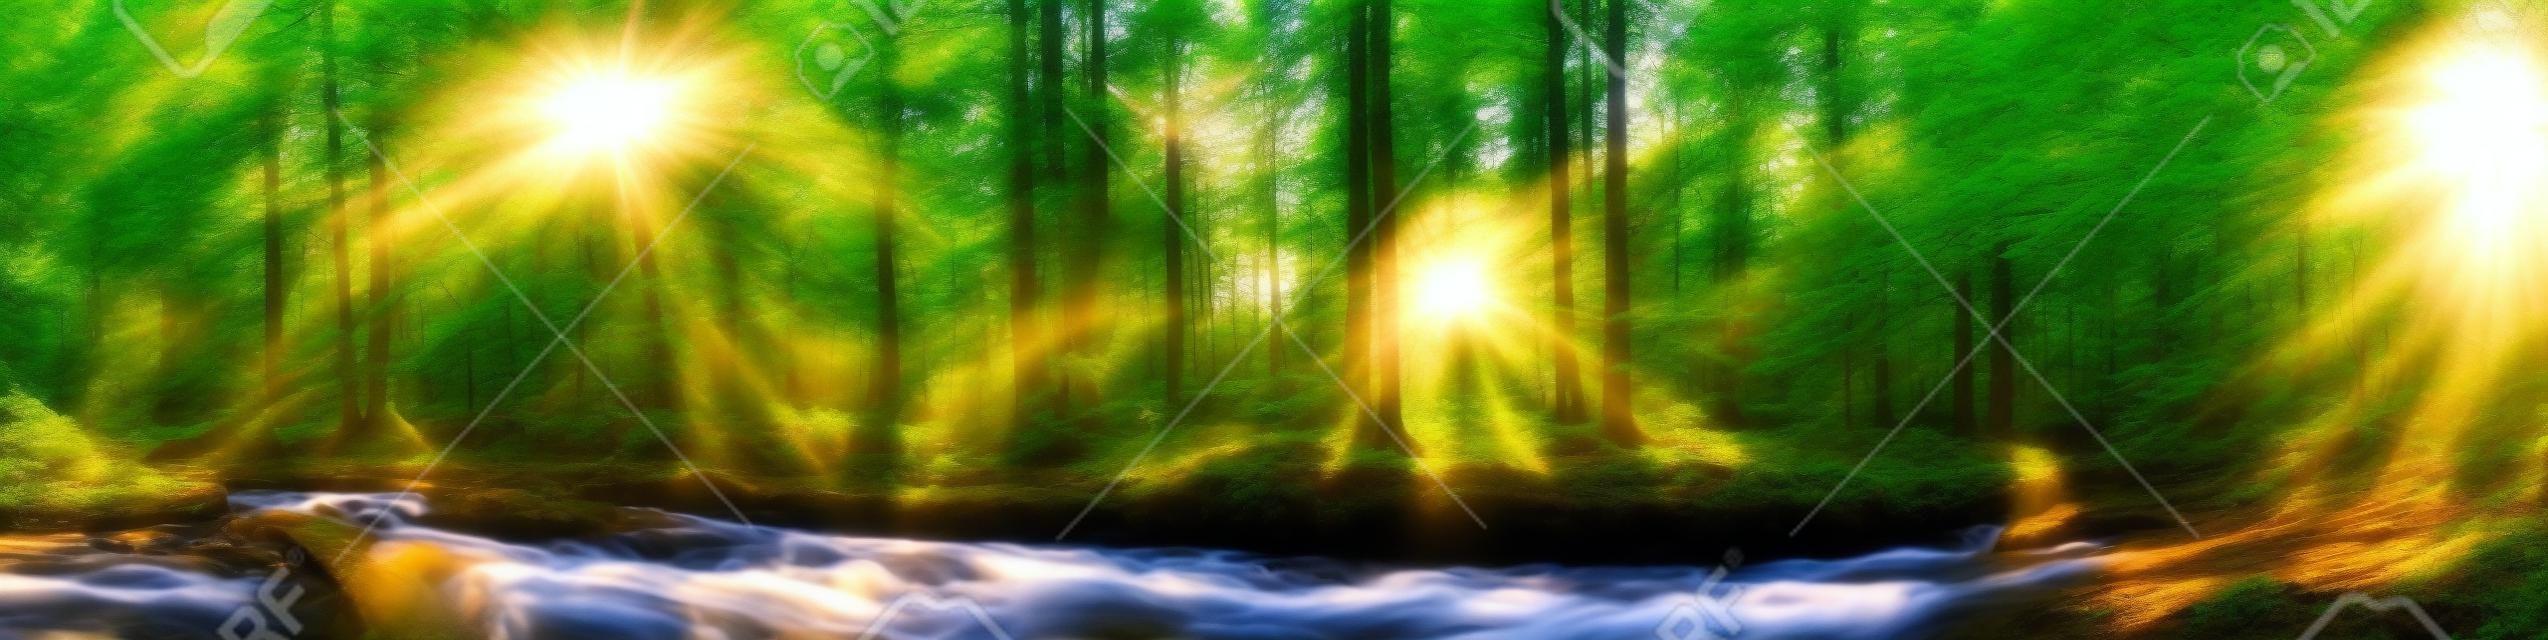 木、川と太陽と美しい森のパノラマ